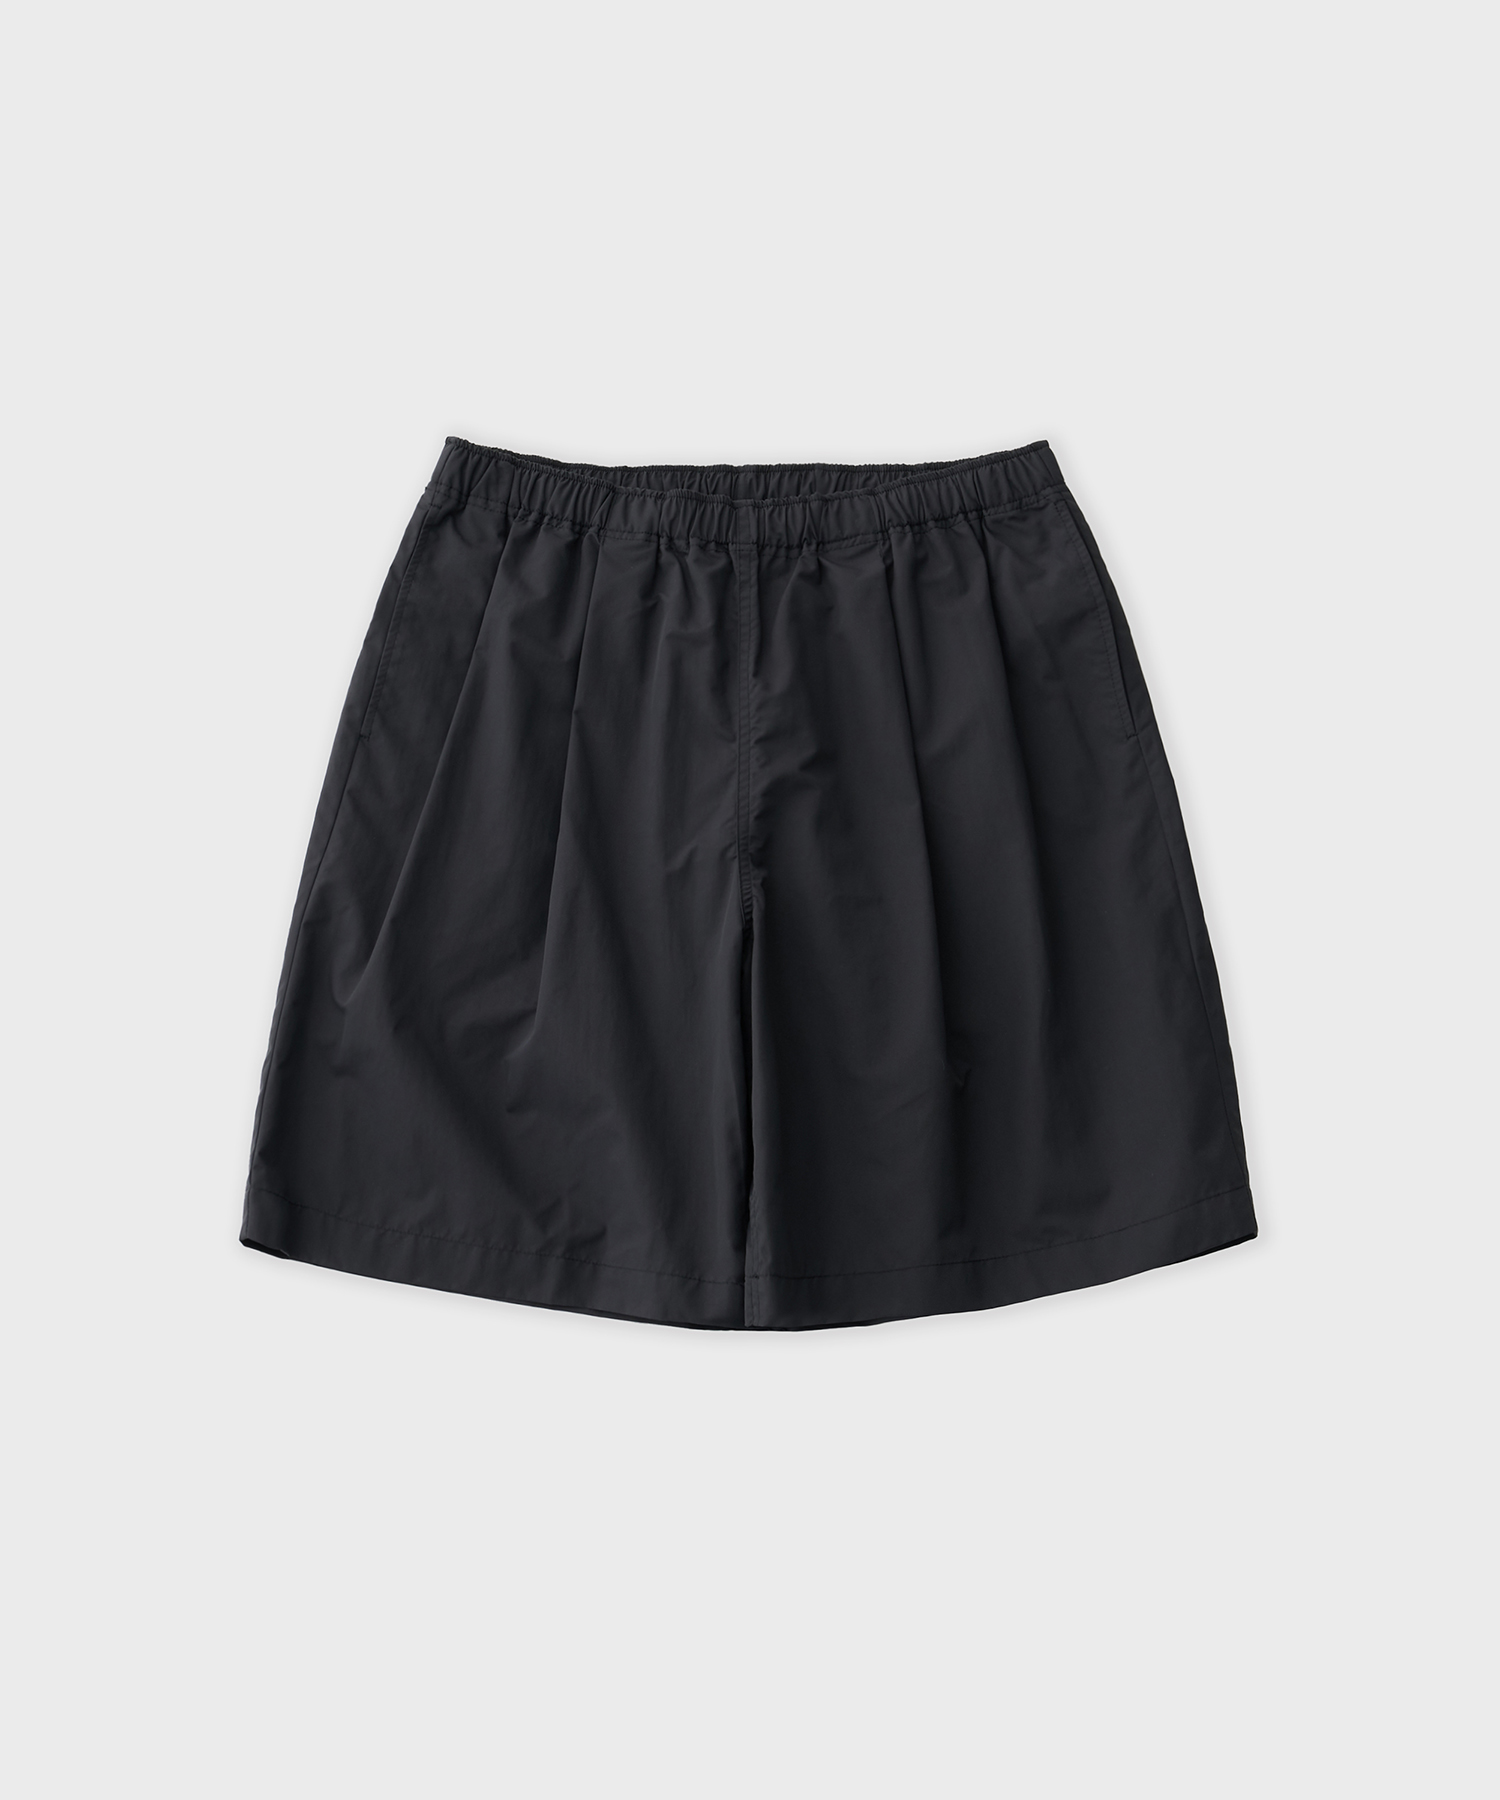 Wide EZ Shorts (Black)